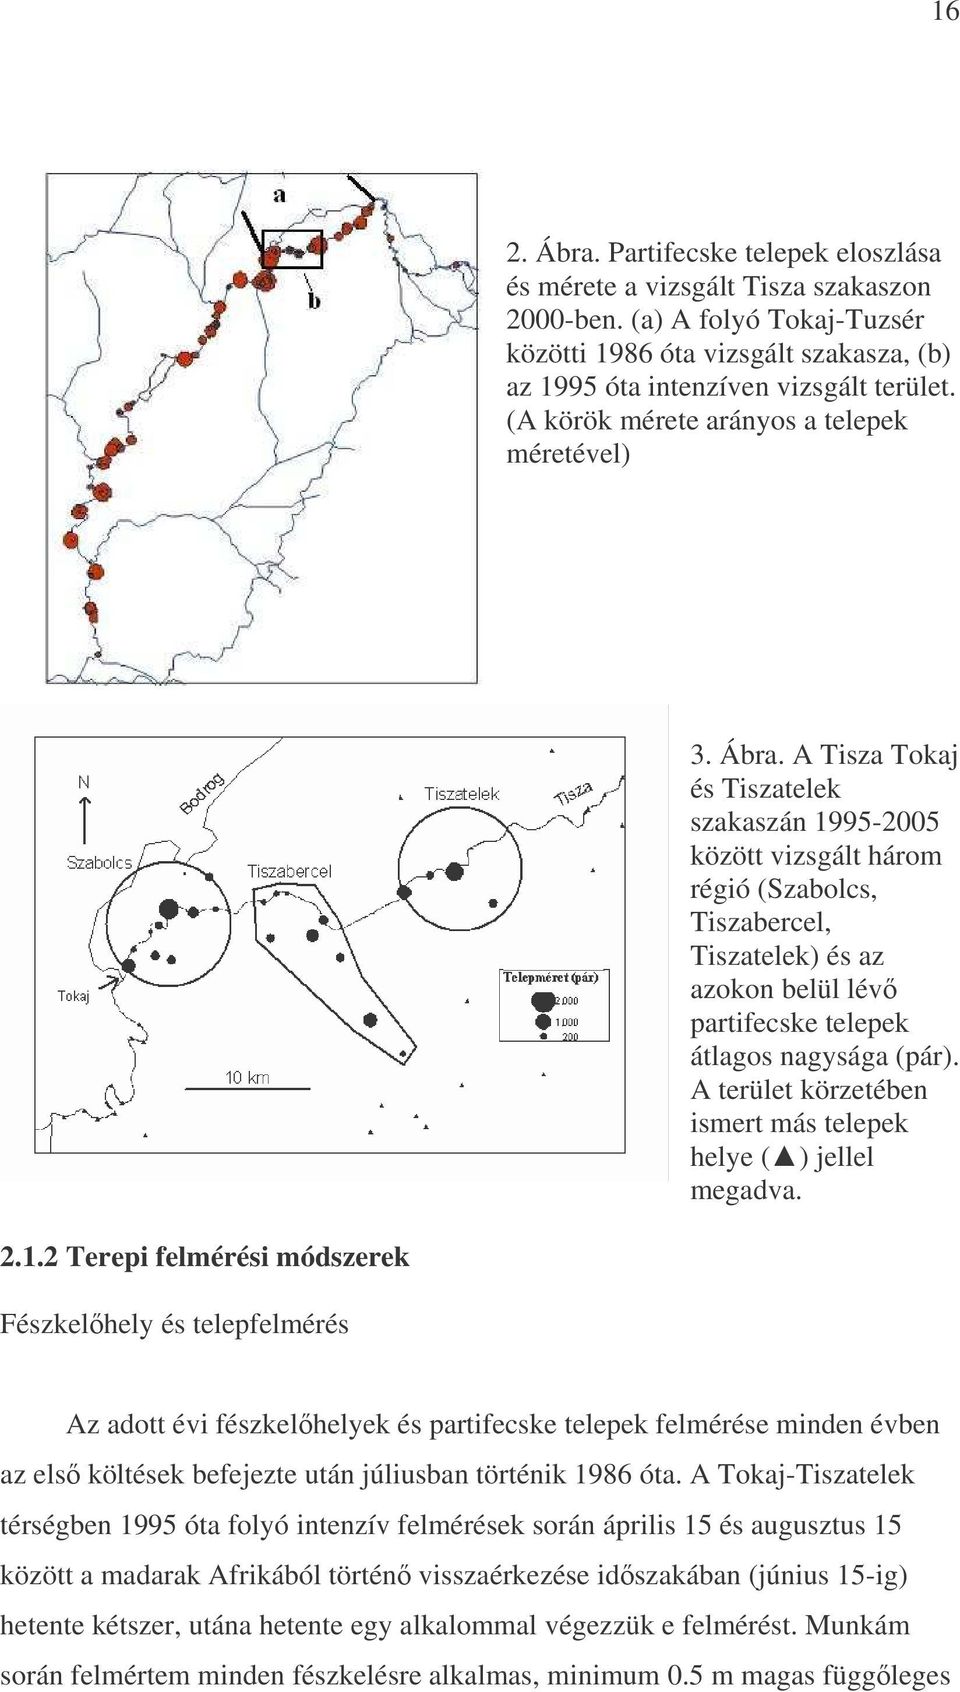 A Tisza Tokaj és Tiszatelek szakaszán 1995-2005 között vizsgált három régió (Szabolcs, Tiszabercel, Tiszatelek) és az azokon belül lév partifecske telepek átlagos nagysága (pár).